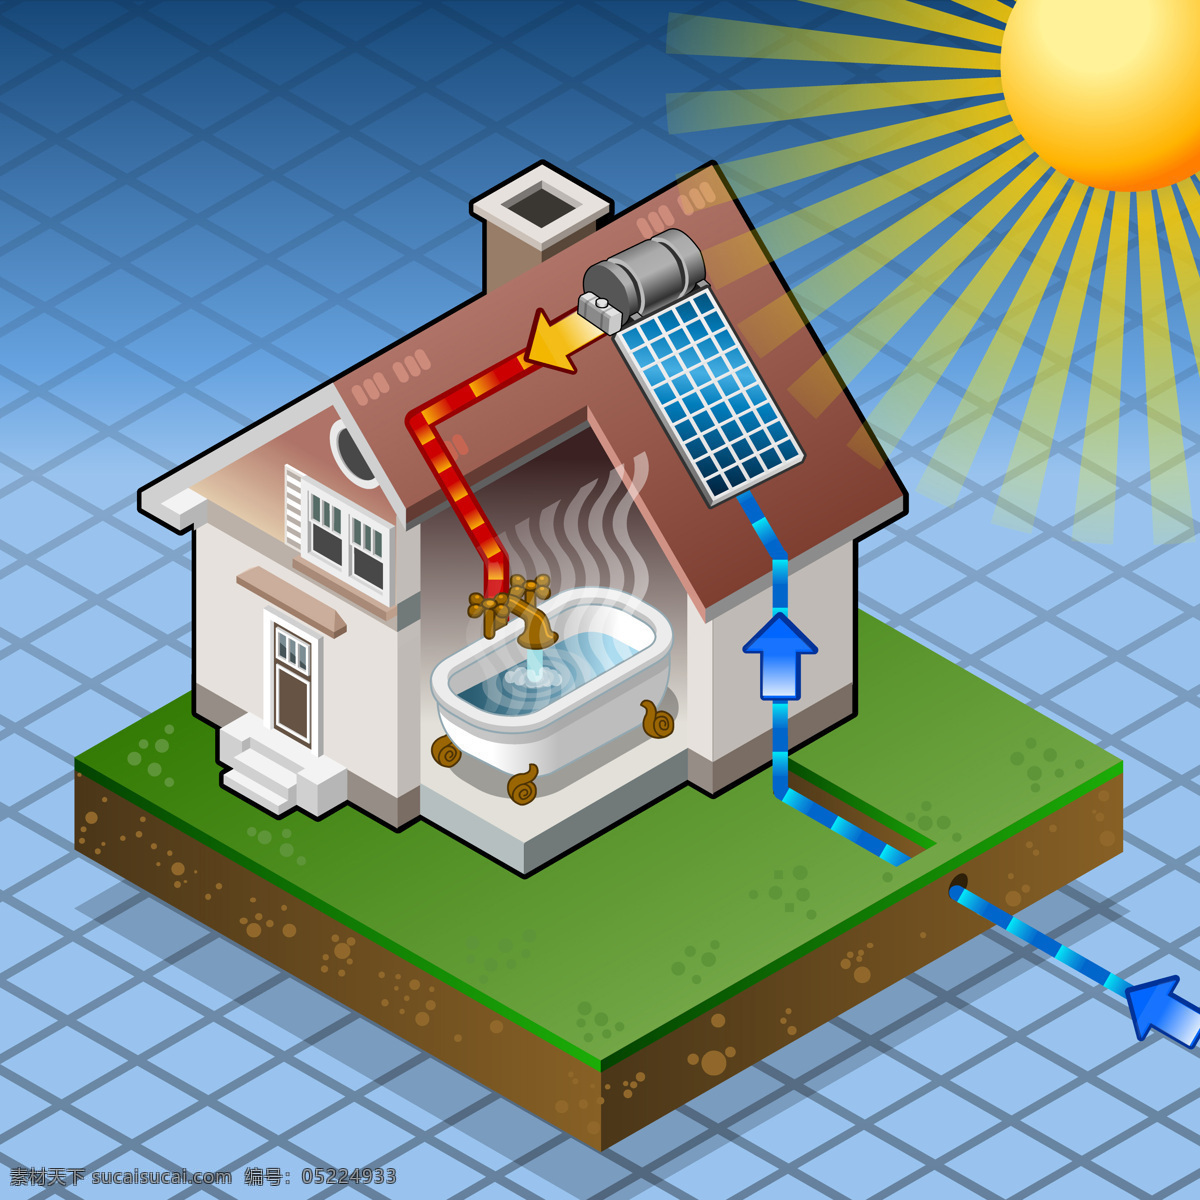 低碳 电力 动漫动画 房子 供电 节能 能源 太阳能 热水系统 资源 清洁能源 家庭用电 电能 设备 供电设施 太阳能系统 热水器 室内 热水 供热 矢量图 日常生活